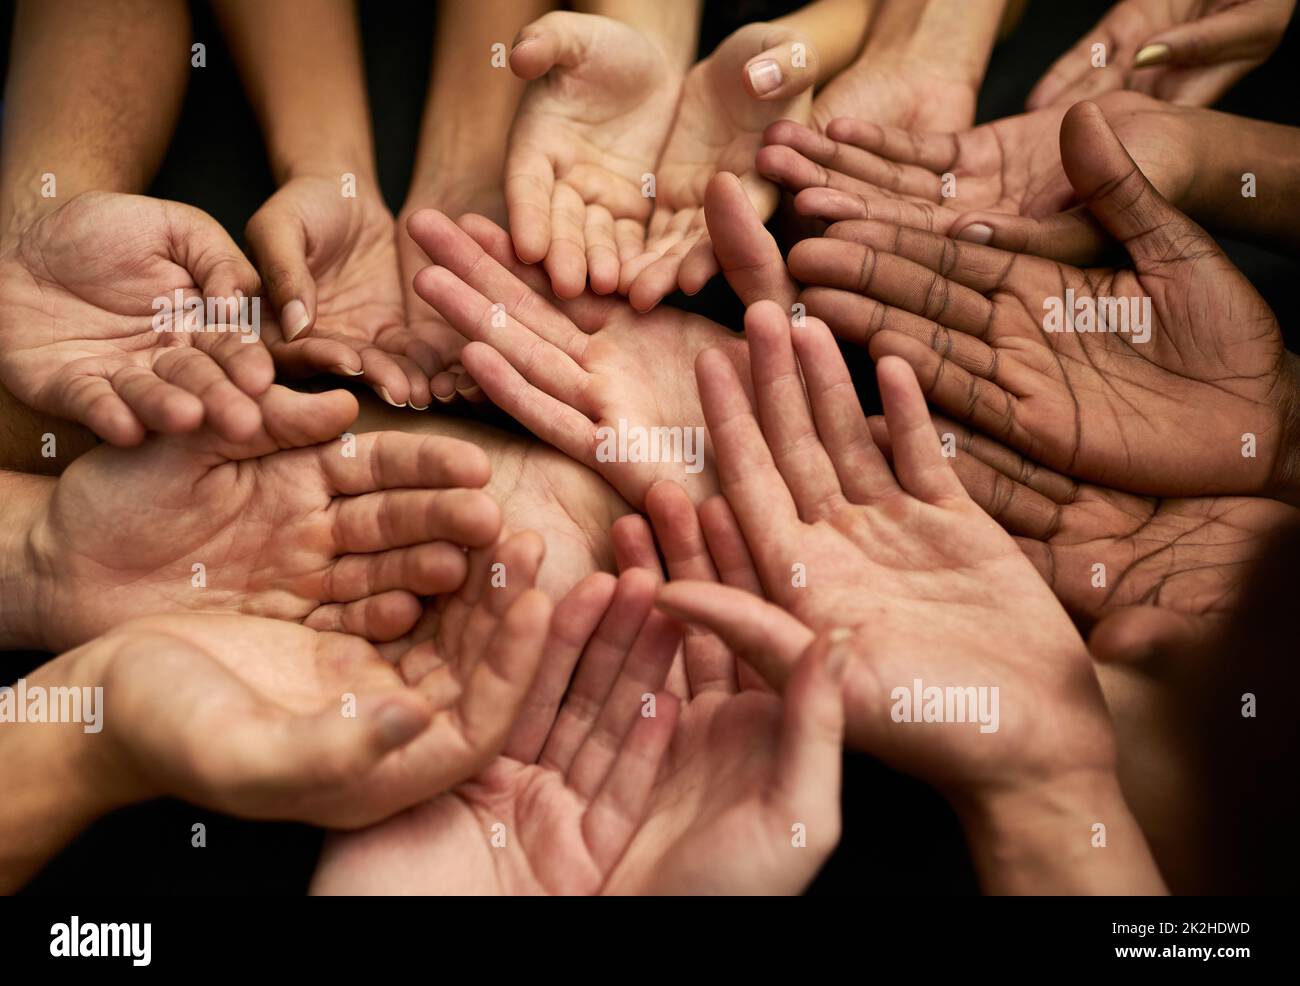 Unterstützen Sie einen guten Zweck. Aufnahme einer Gruppe von Händen, die zusammengehalten wurden. Stockfoto